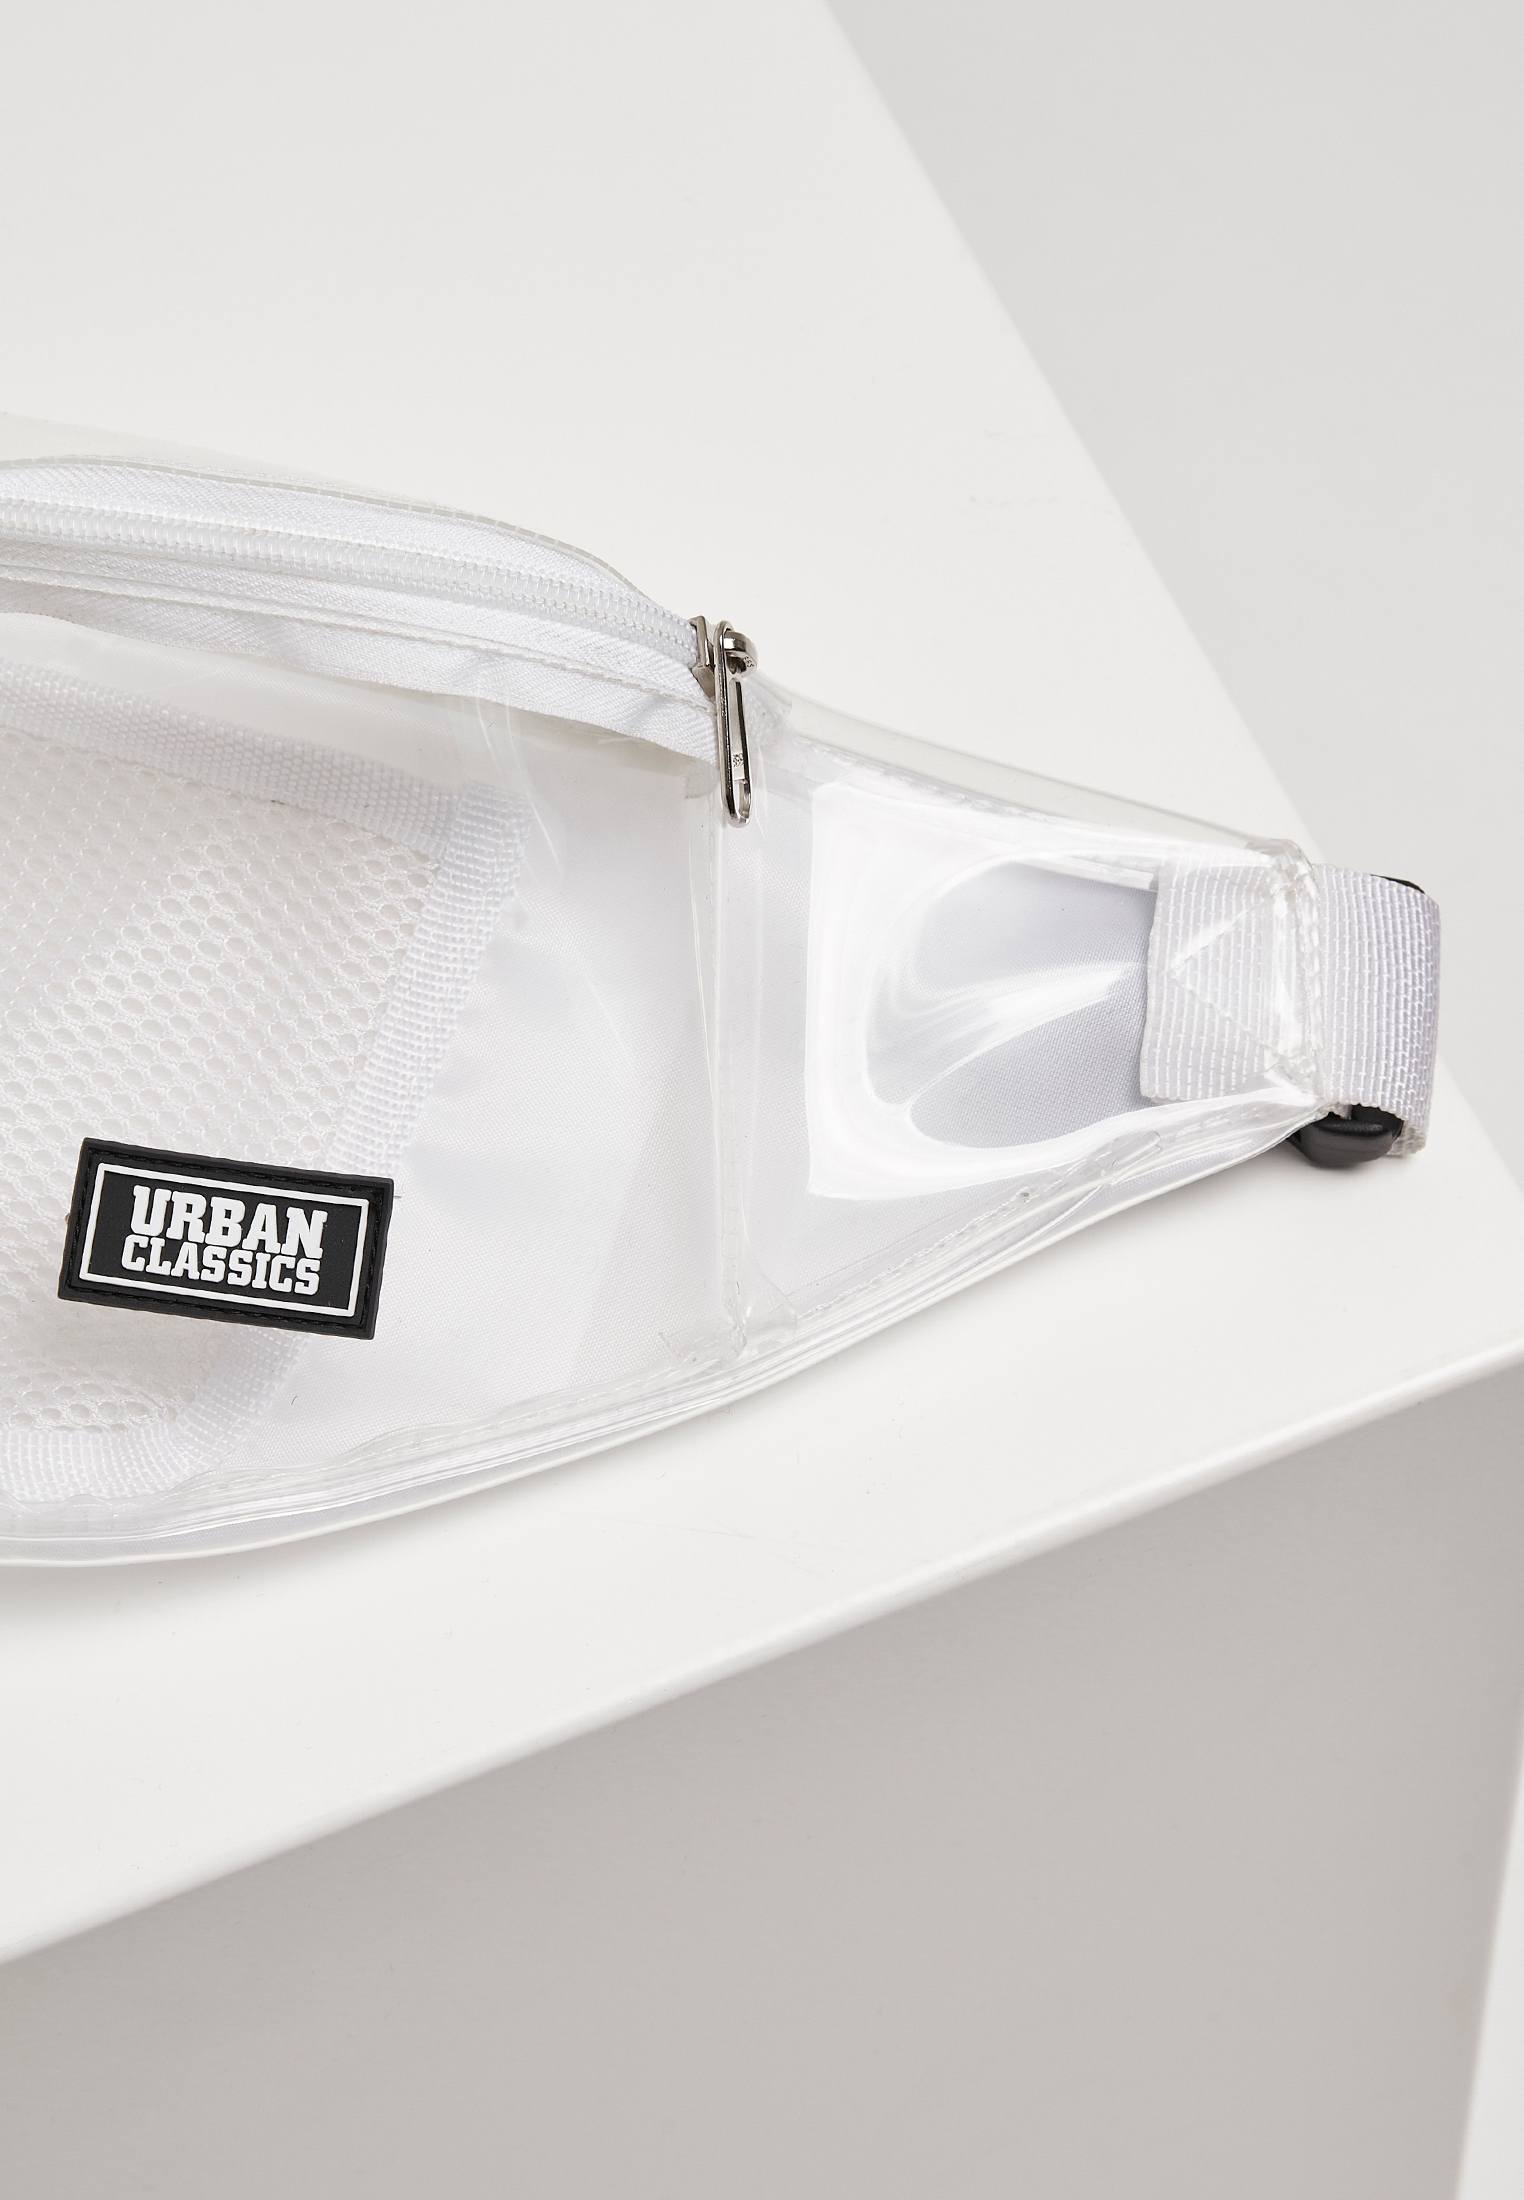 Taschen Transparent Shoulder Bag in Farbe transparent white